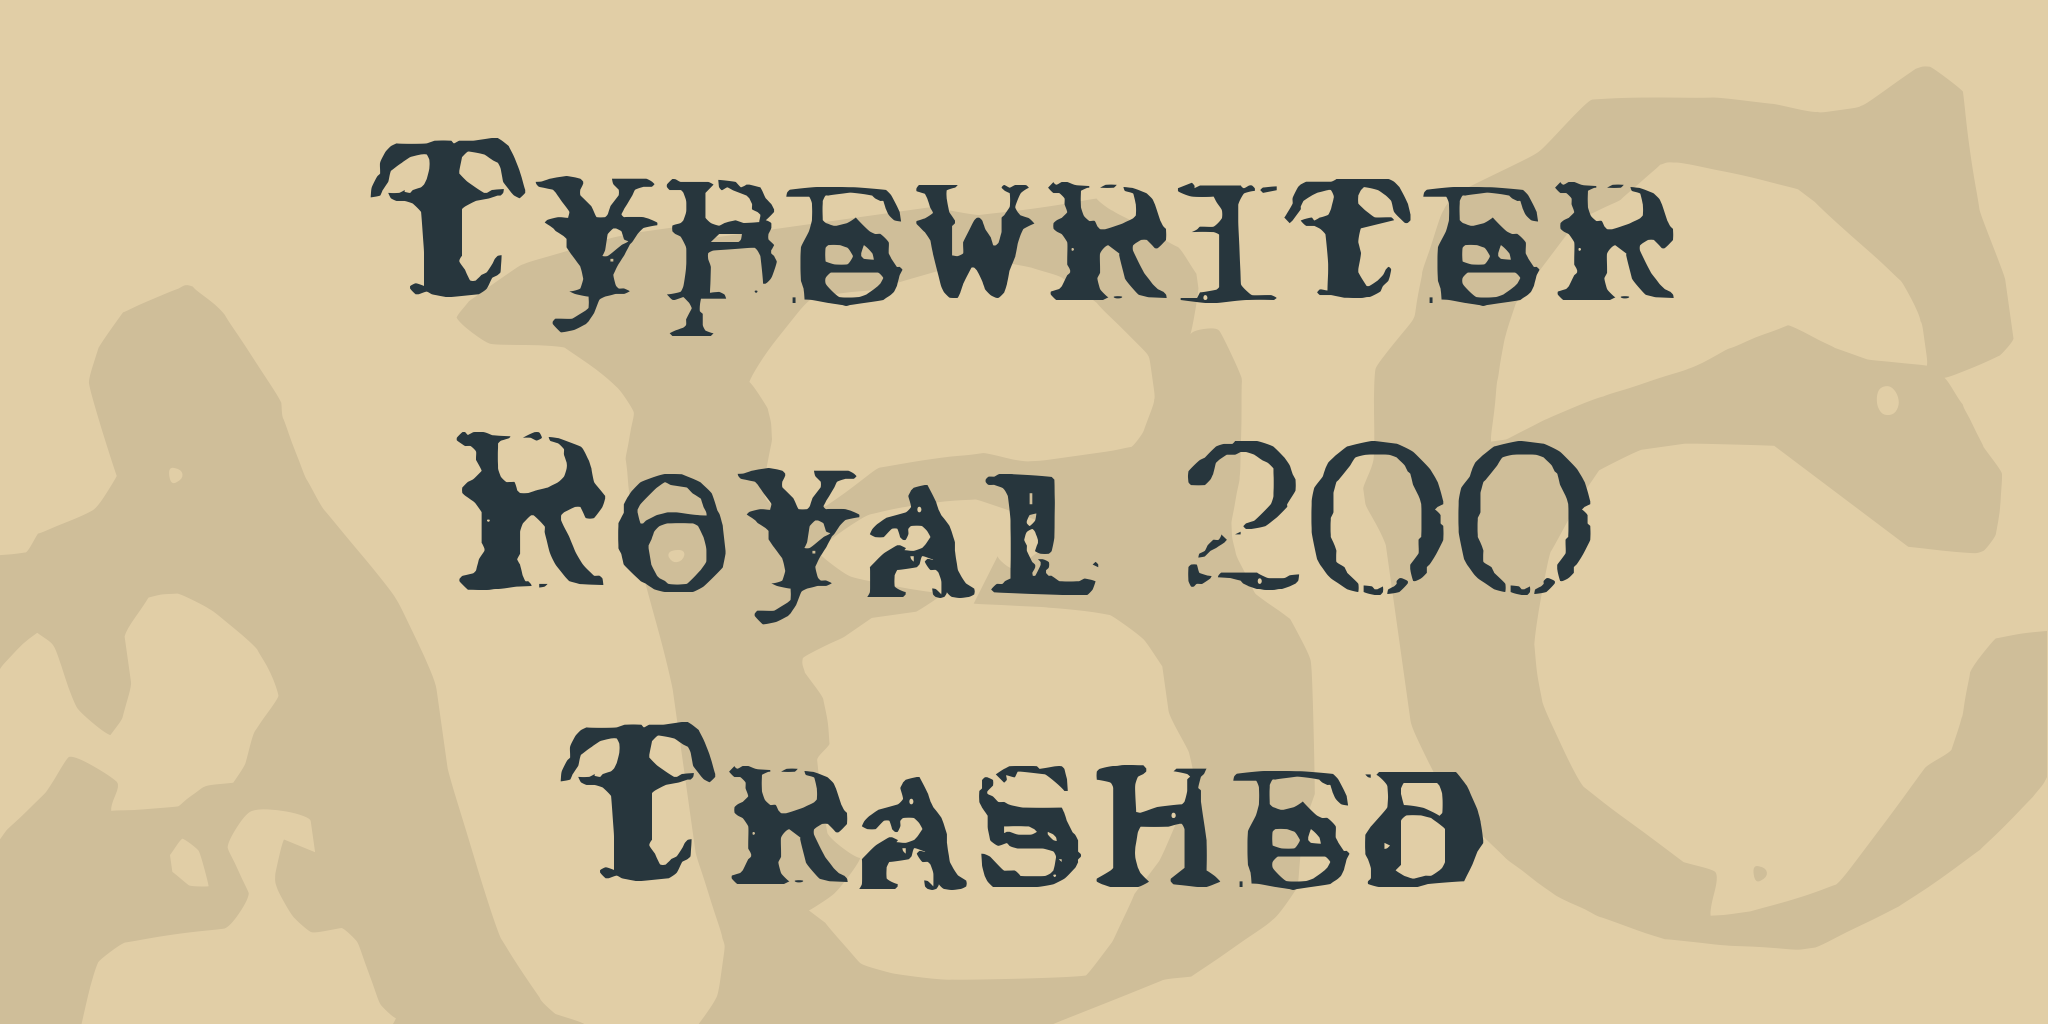 Typewriter Royal 200 Trashed